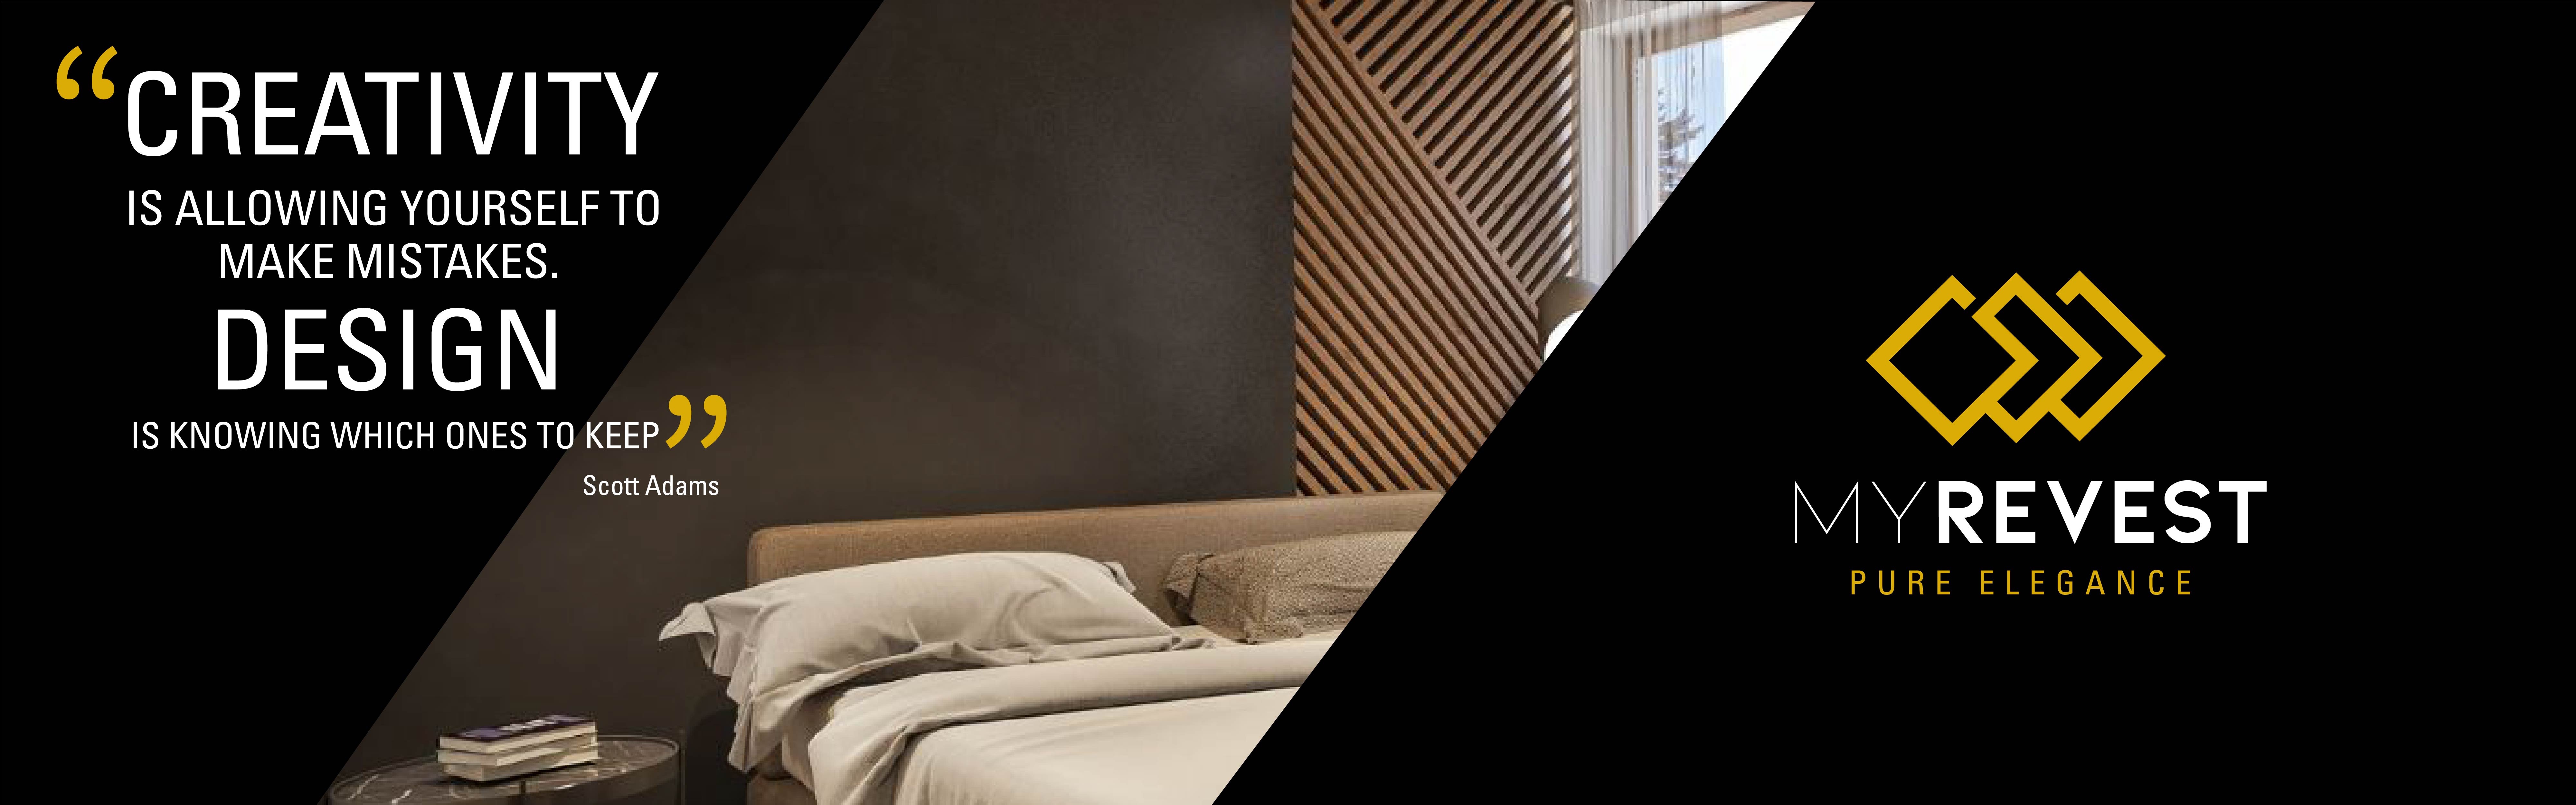 Mikrosementbelegg på veggen i et minimalistisk soverom ved siden av MyRevest-logoen